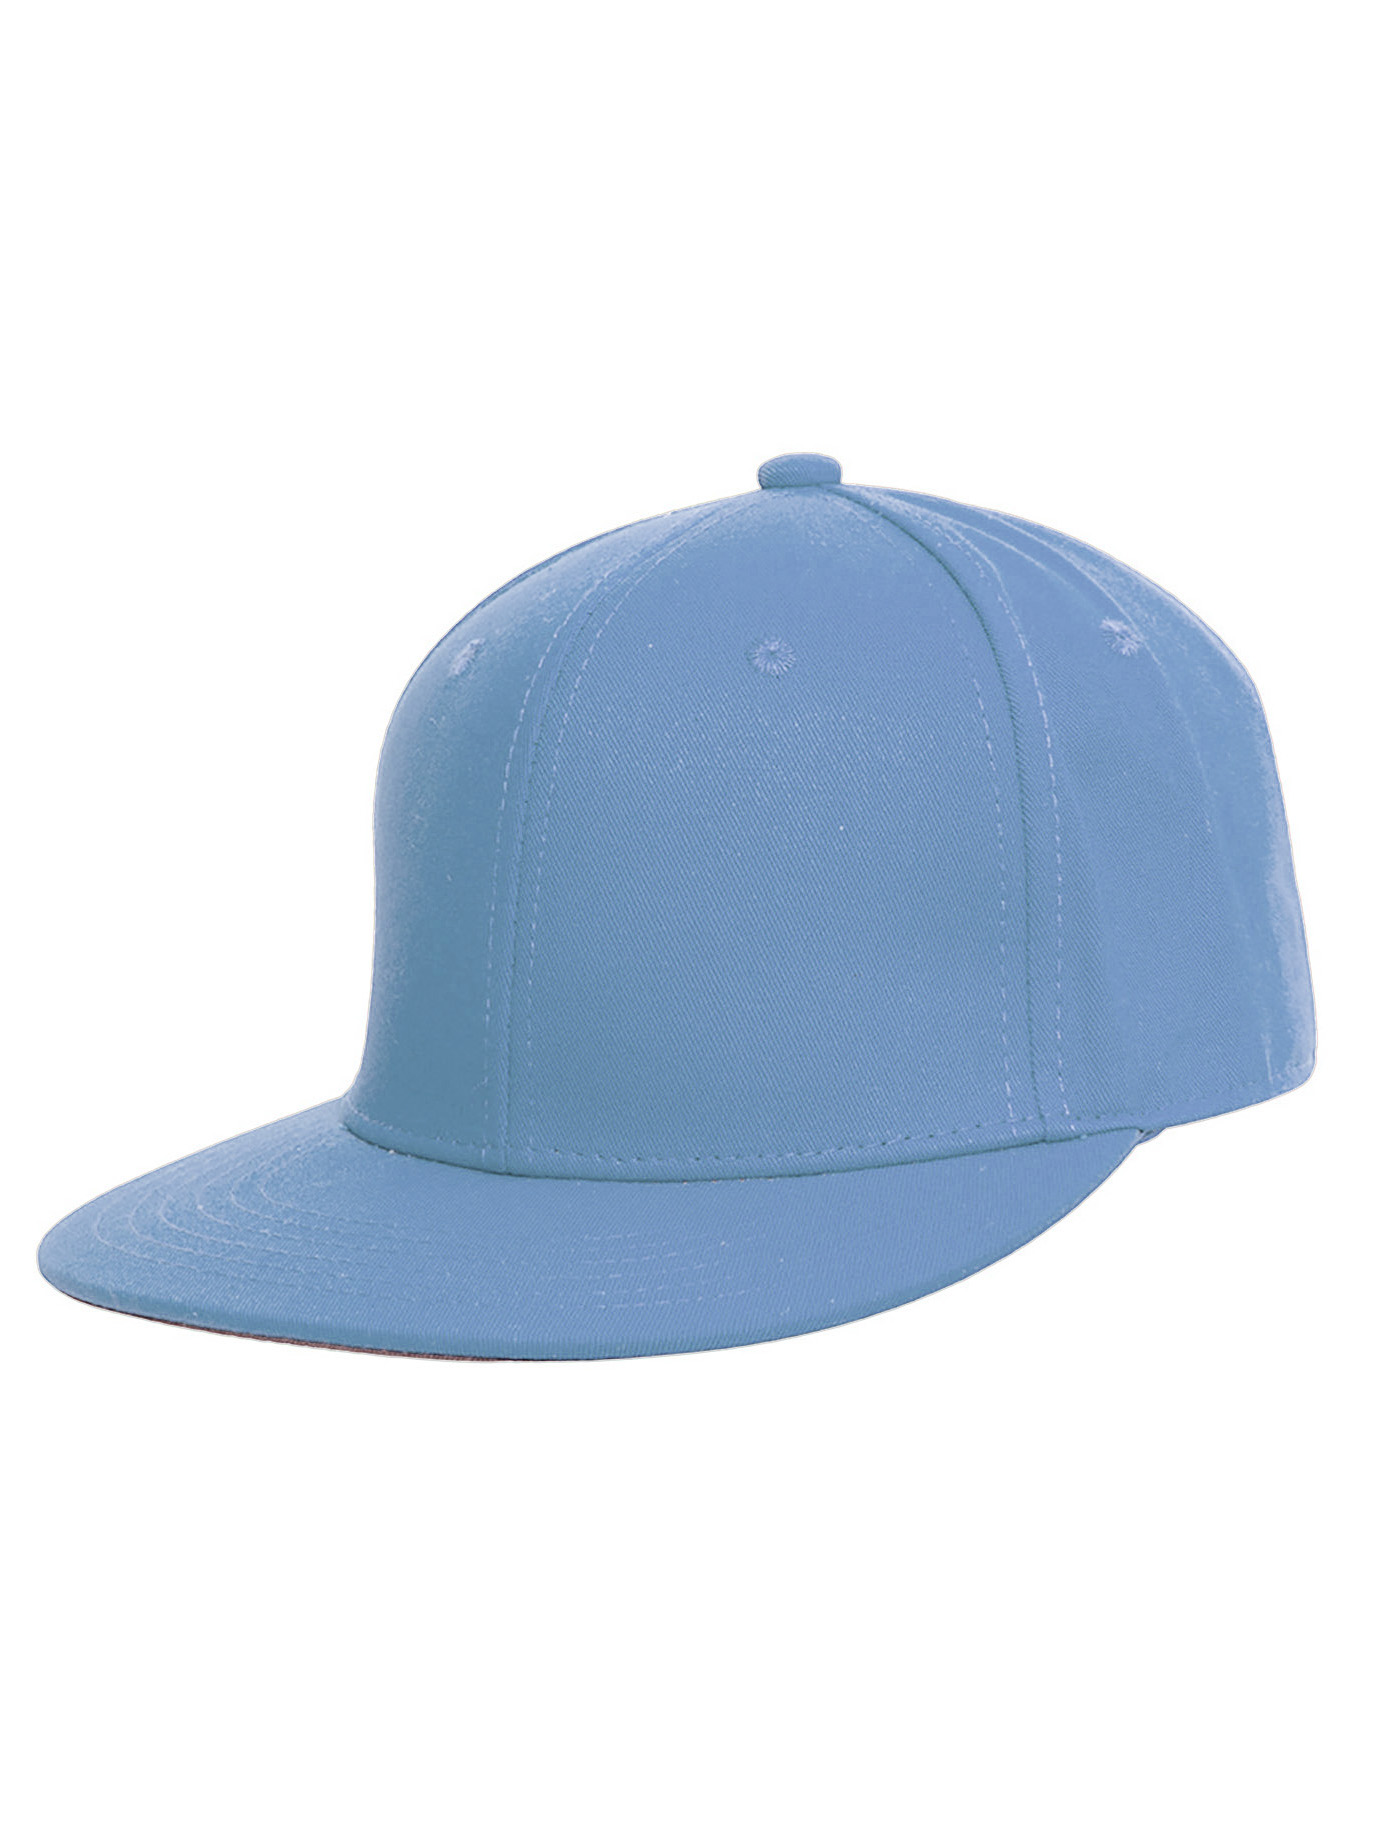 Top Headwear Plain Flat Bill Fitted Hat, Sky Blue 7 3/4 - image 1 of 4